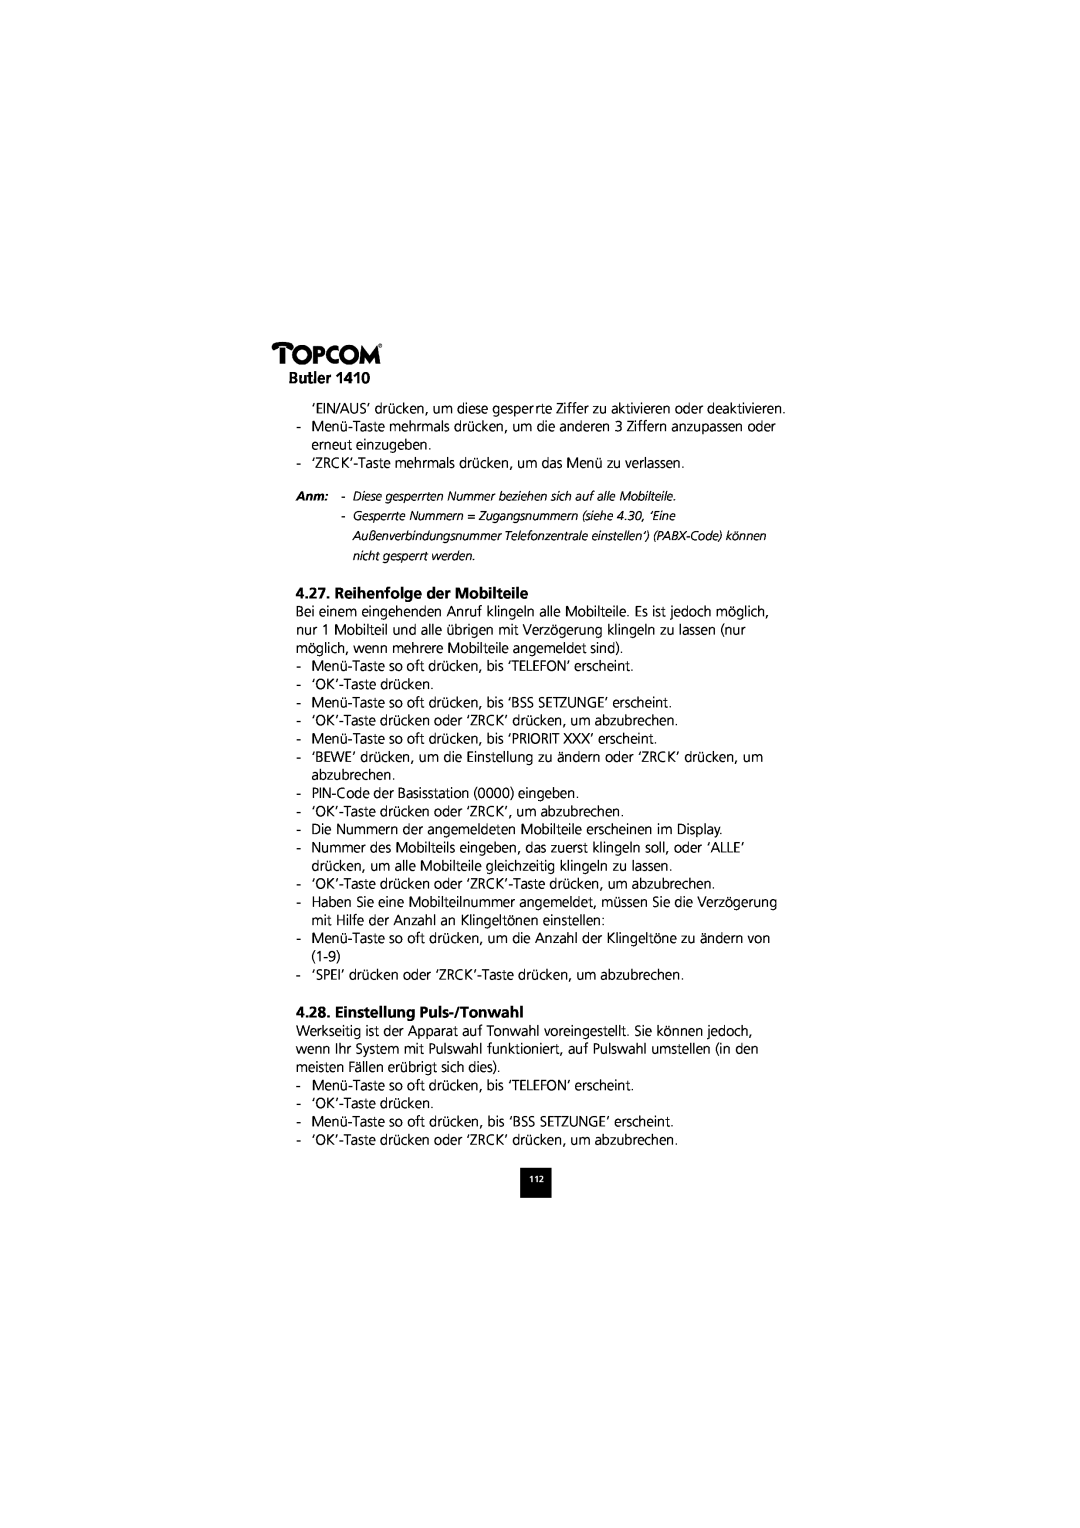 Topcom 1410 manual Reihenfolge der Mobilteile, Einstellung Puls-/Tonwahl, Butler 